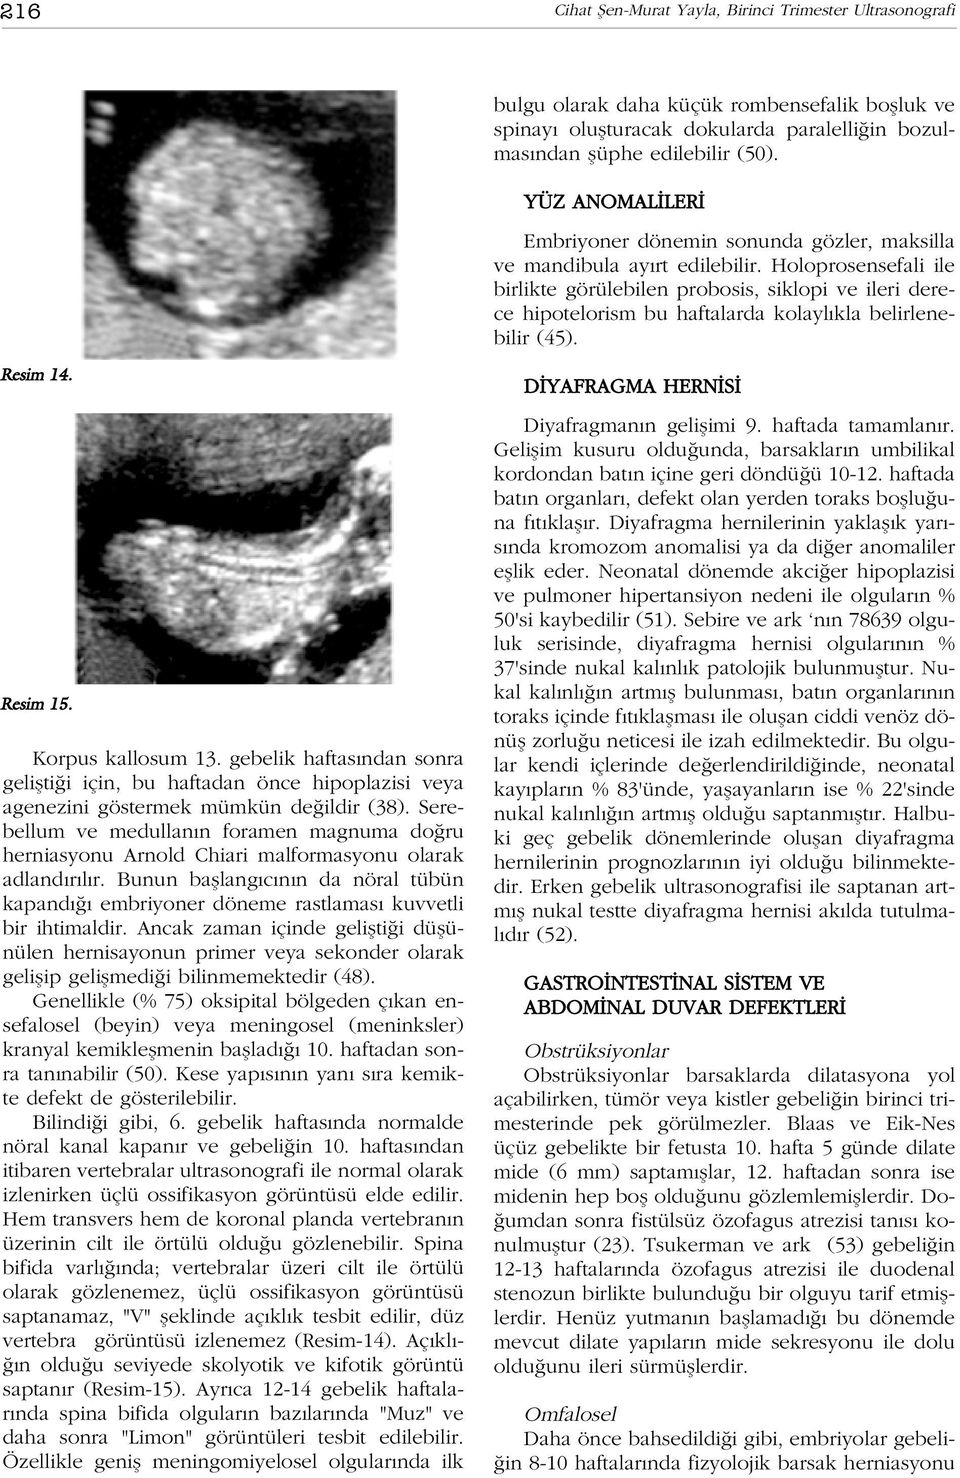 Holoprosensefali ile birlikte görülebilen probosis, siklopi ve ileri derece hipotelorism bu haftalarda kolayl kla belirlenebilir (45). Resim 14. Resim 15. Korpus kallosum 13.